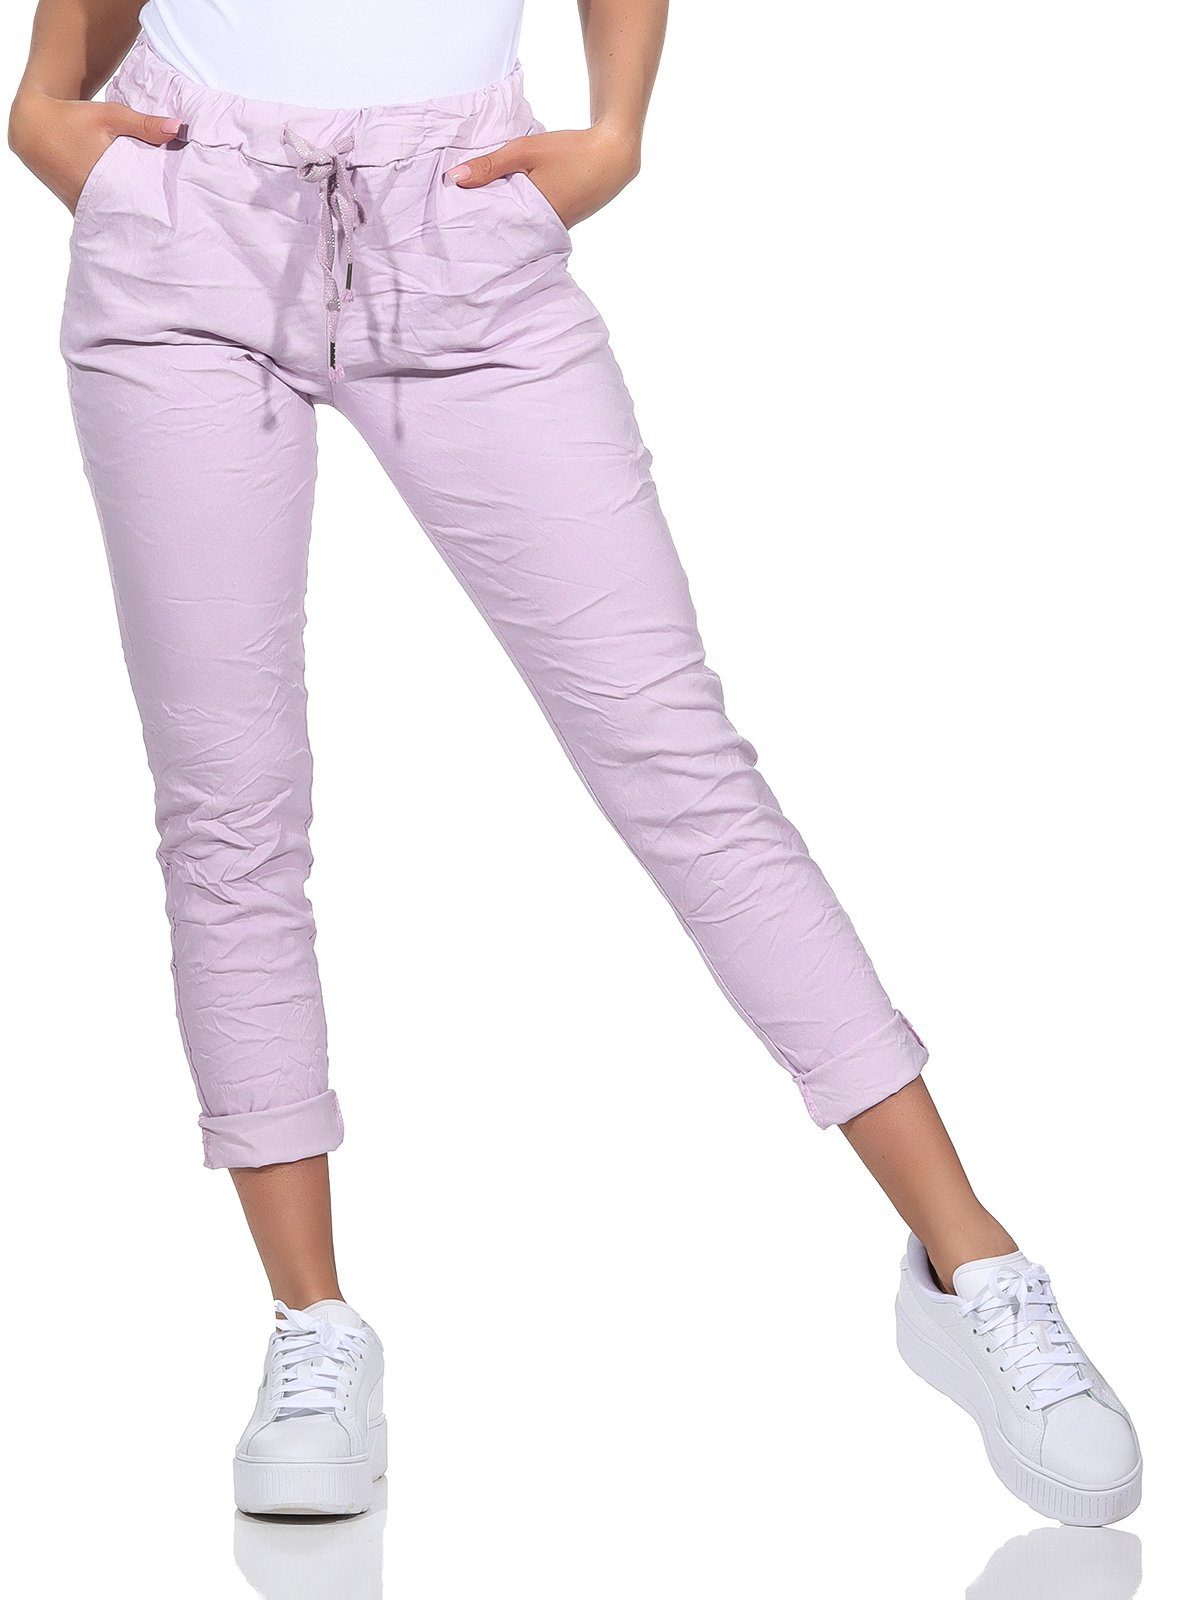 Aurela Damenmode Schlupfhose Sommerhose Damen Chinohose leichte Schlupfhose auch in großen Größen erhältlich, Stretch-Jeans in modischen Sommerfarben, max. Körpergröße 1,69m Flieder